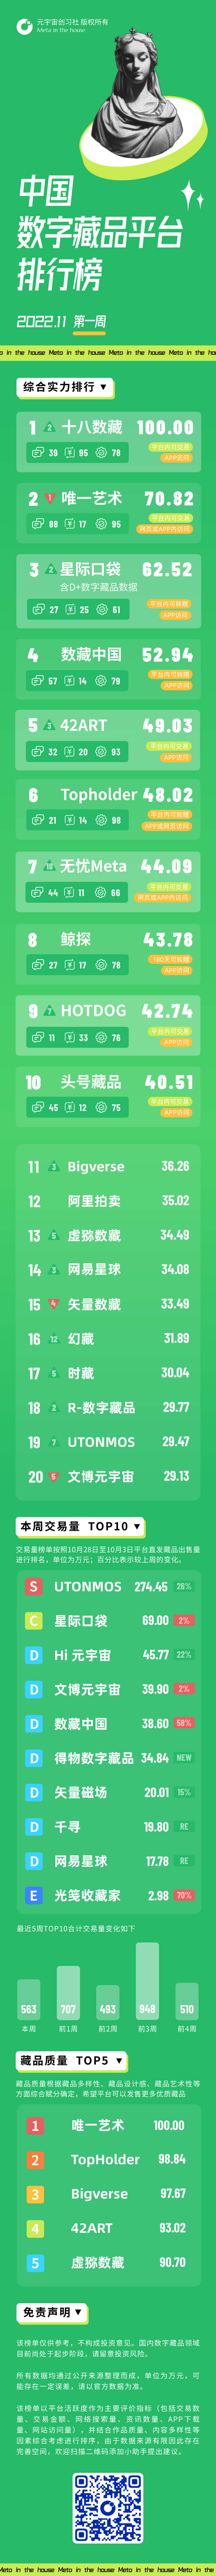 数字馆藏平台排行榜｜2022.11第一周